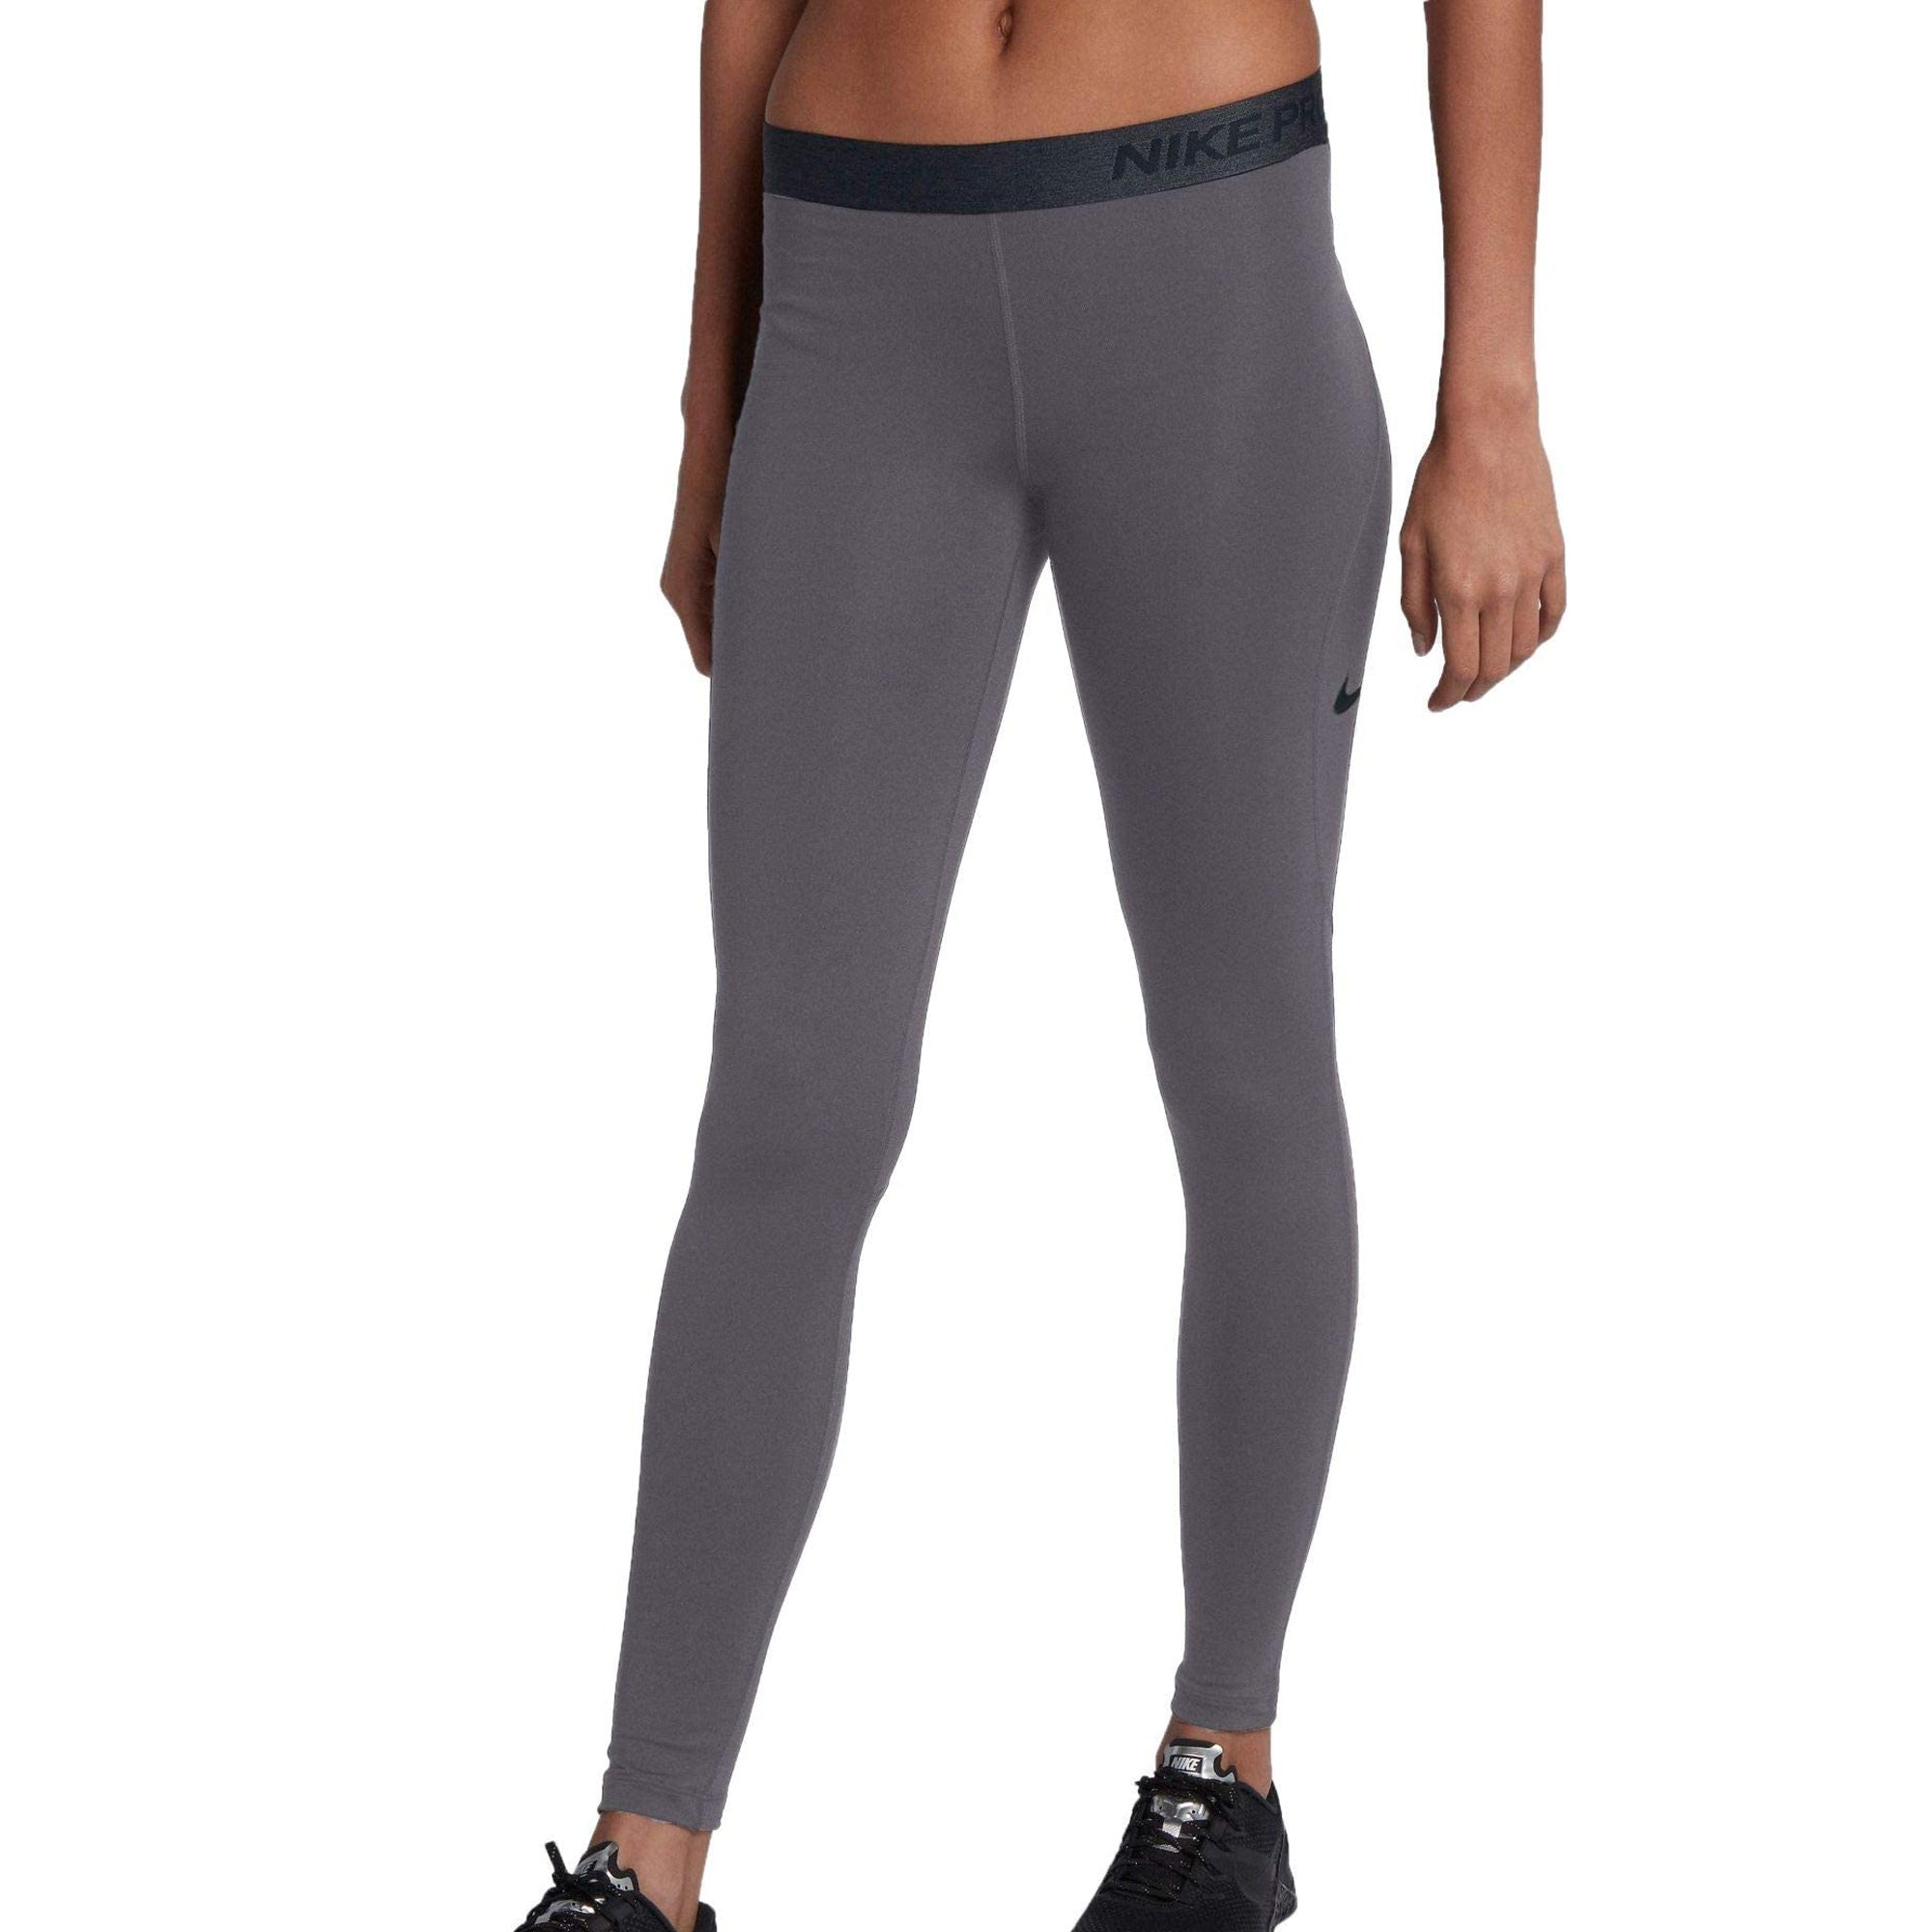  Nike Women's Capri Pro Leggings (Carbon Heather/Black